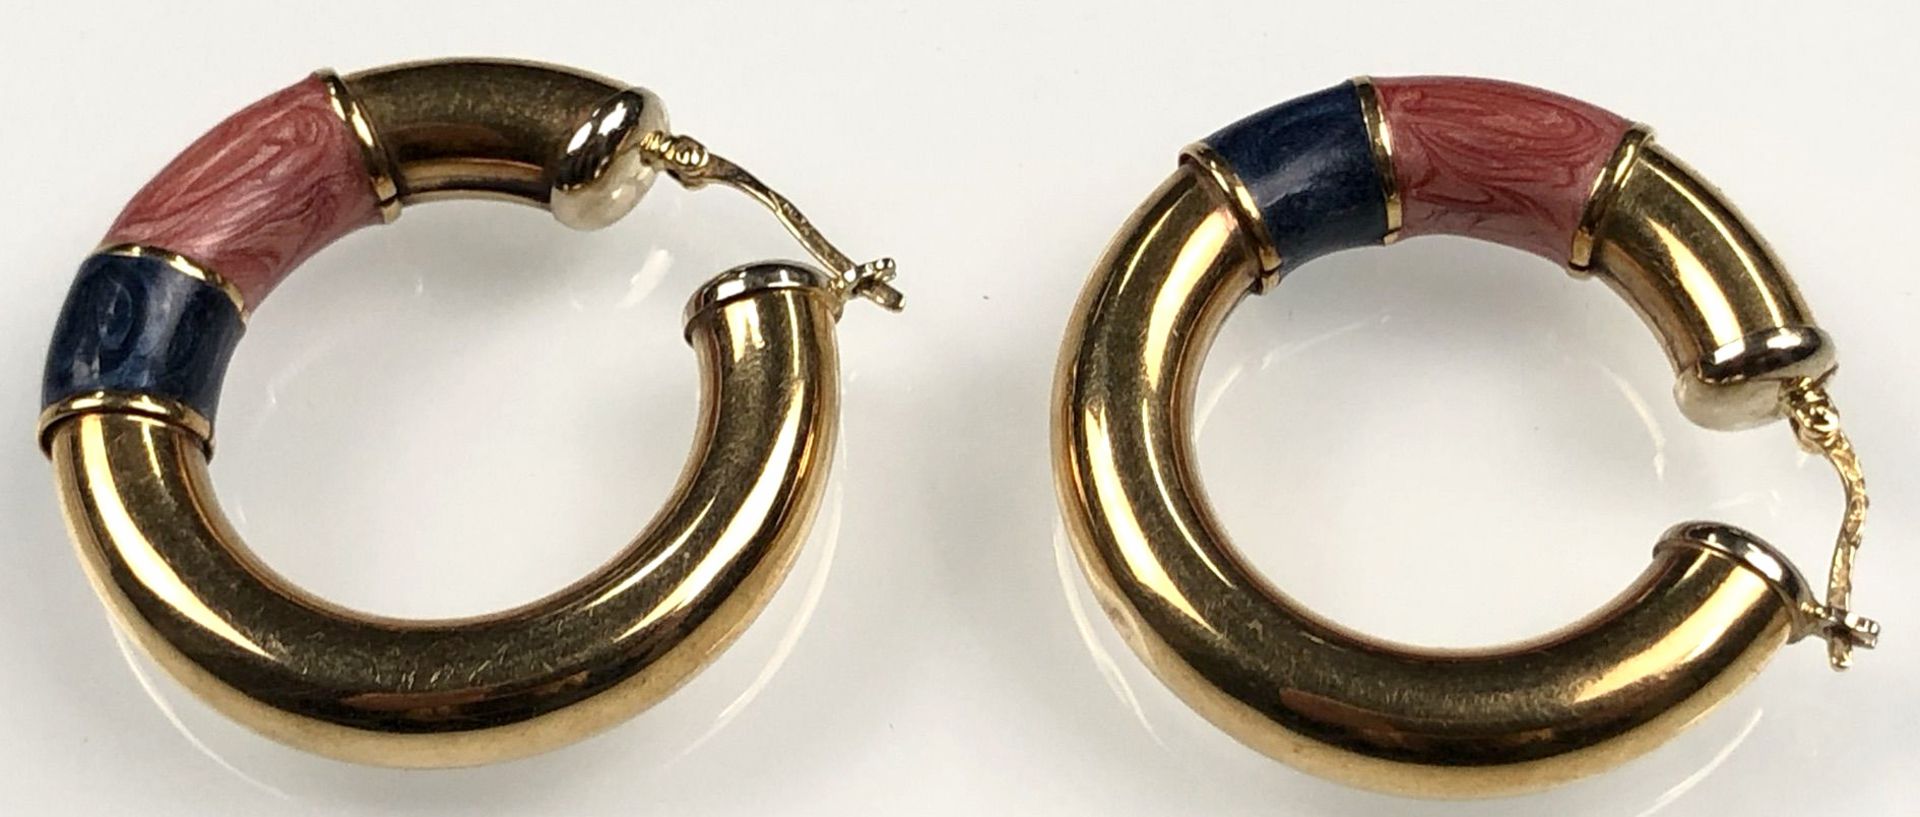 Creole earrings yellow gold 750. With enamel. - Image 3 of 8